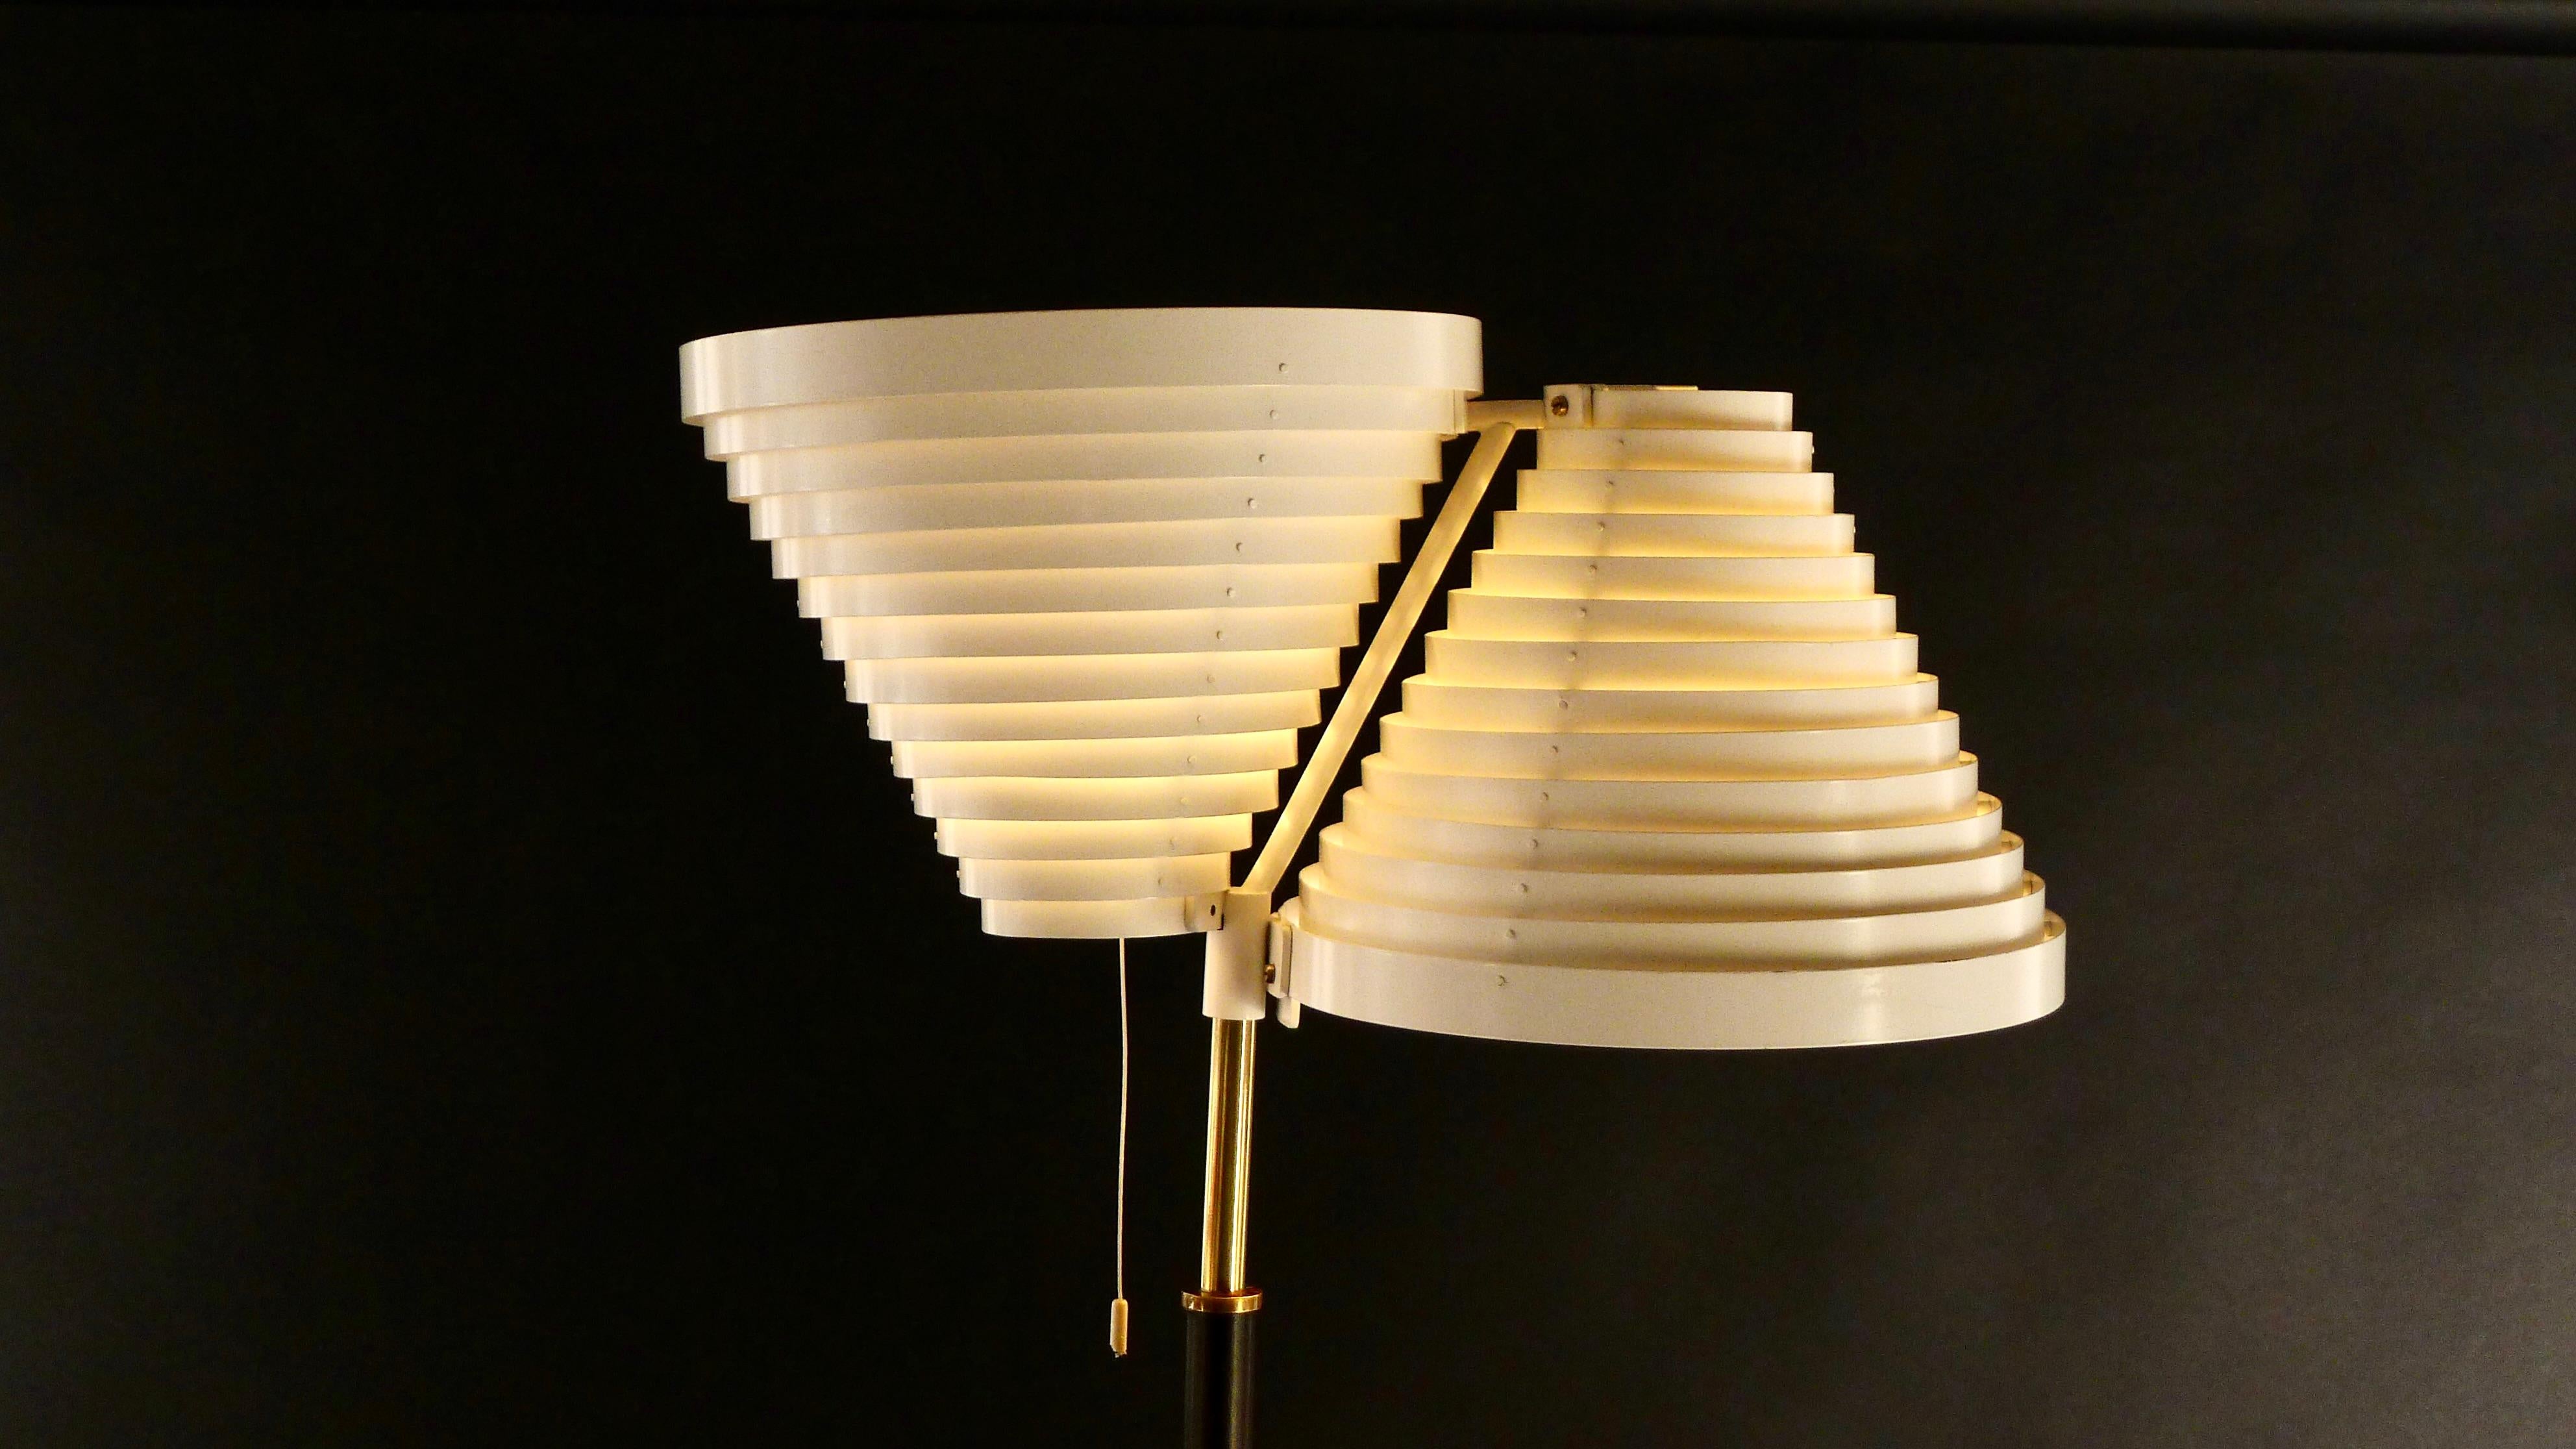 Diese seltene, frühe Double Angel Wing Stehleuchte wurde 1959 von Alvar Aalto entworfen und von Valaistystyo Ky, Helsinki, hergestellt, die die ersten Hersteller der Leuchte waren.

Die ikonischen, weiß lackierten Metalllamellenschirme erheben sich